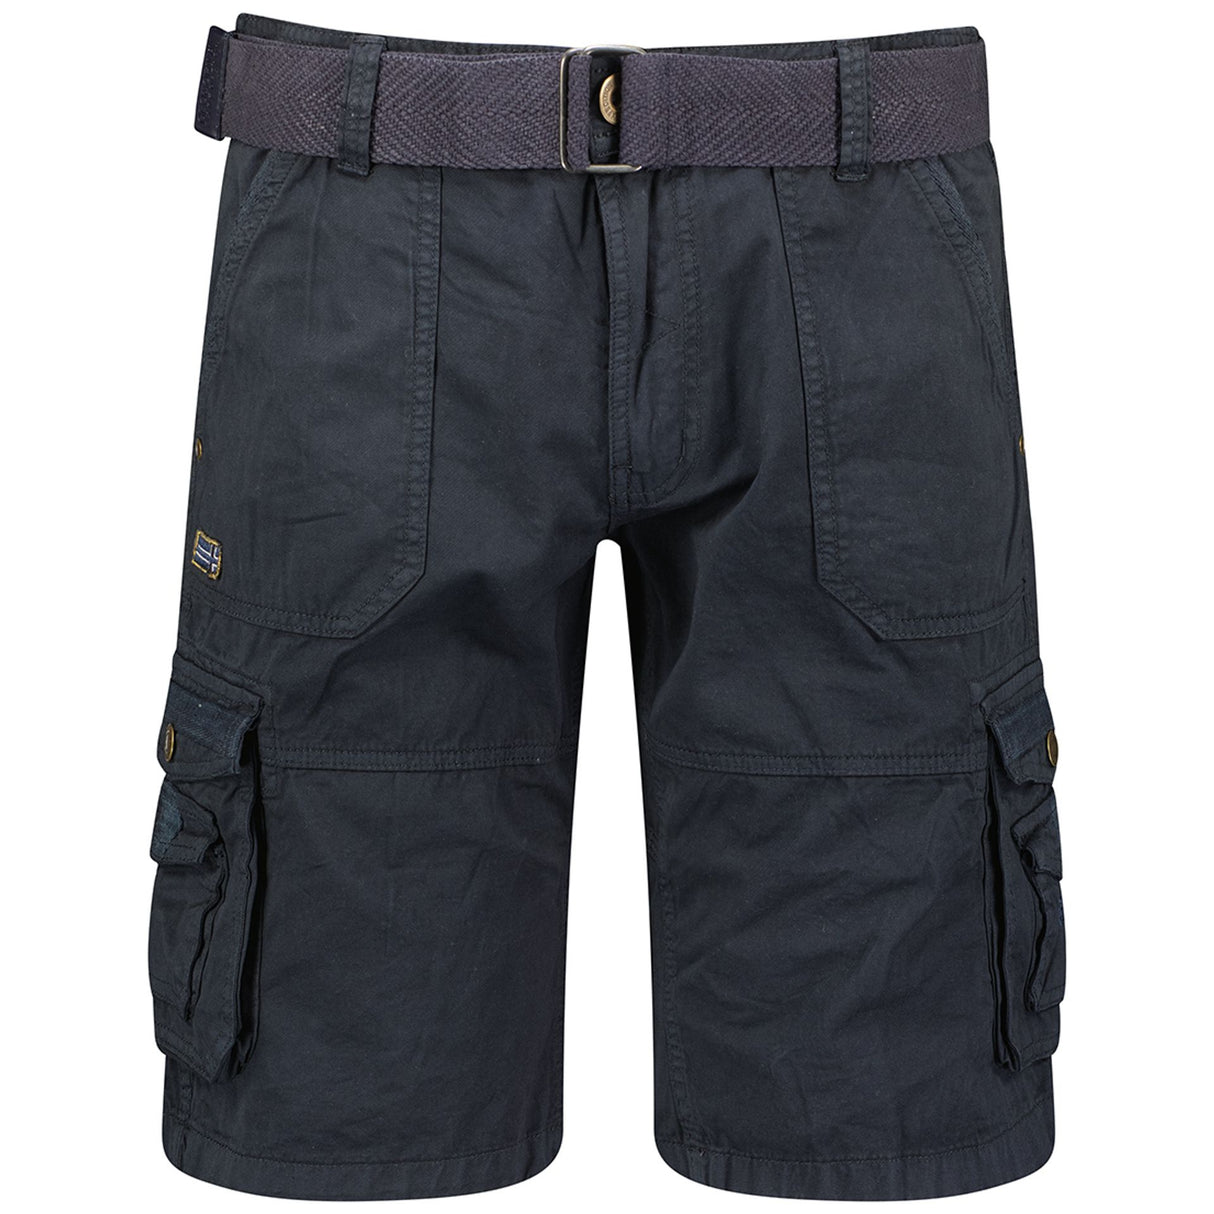 Men's Spring/Summer shorts Zip-fly shorts 6-pocket shorts Solid color shorts Cotton shorts Wash at 30° C Visible logo